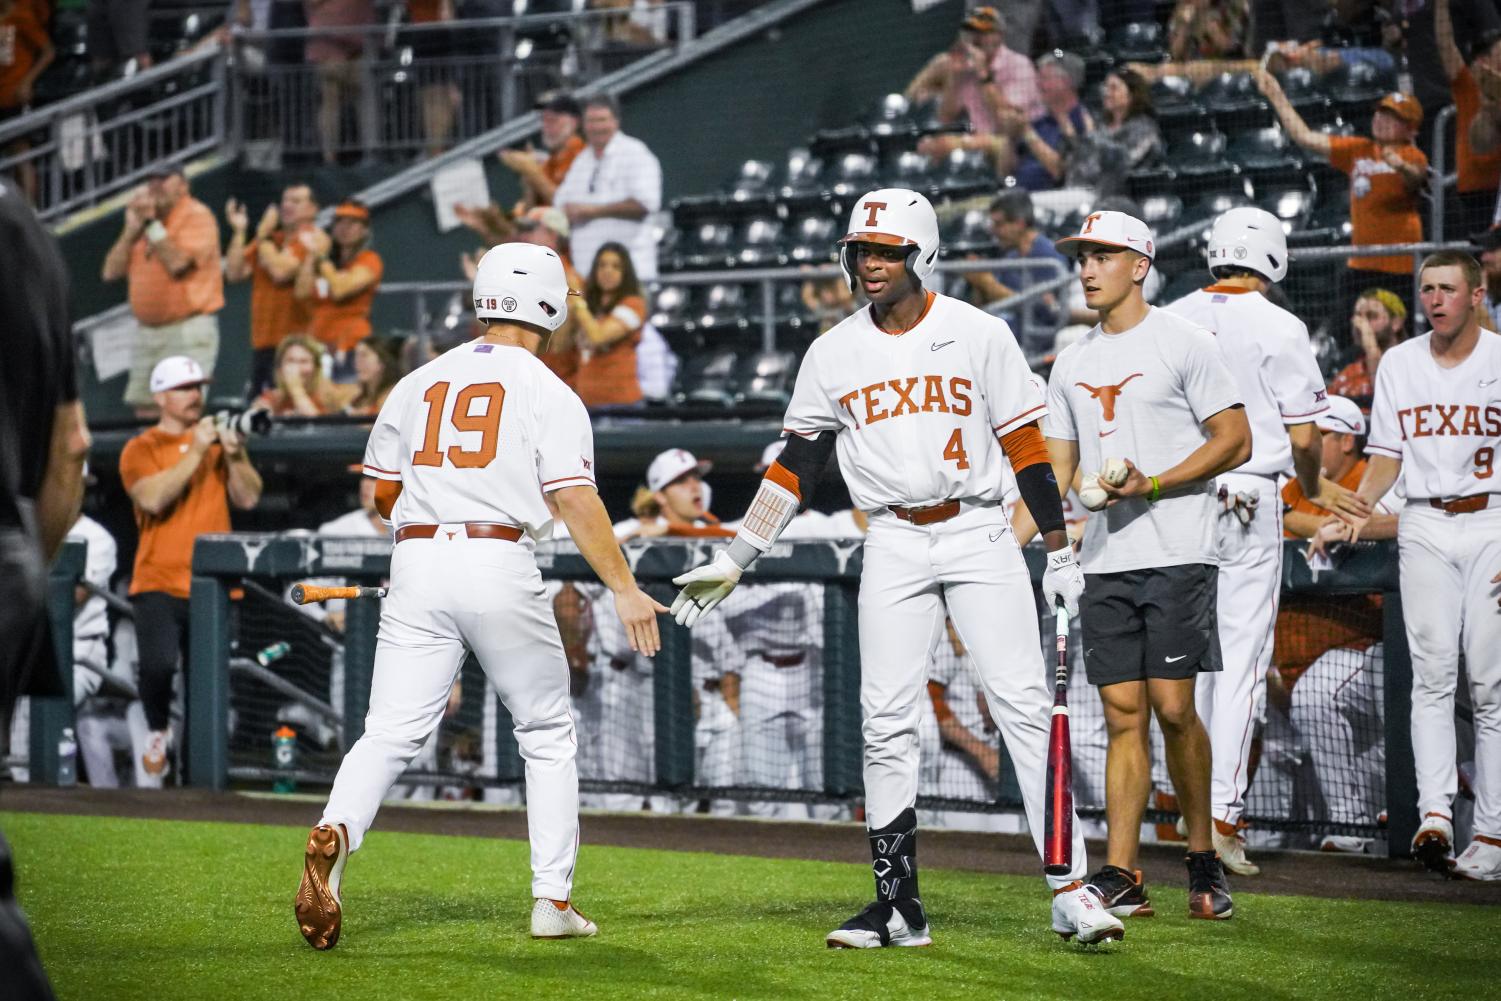 Texas beats Air Force 7-1 behind three home runs – The Daily Texan